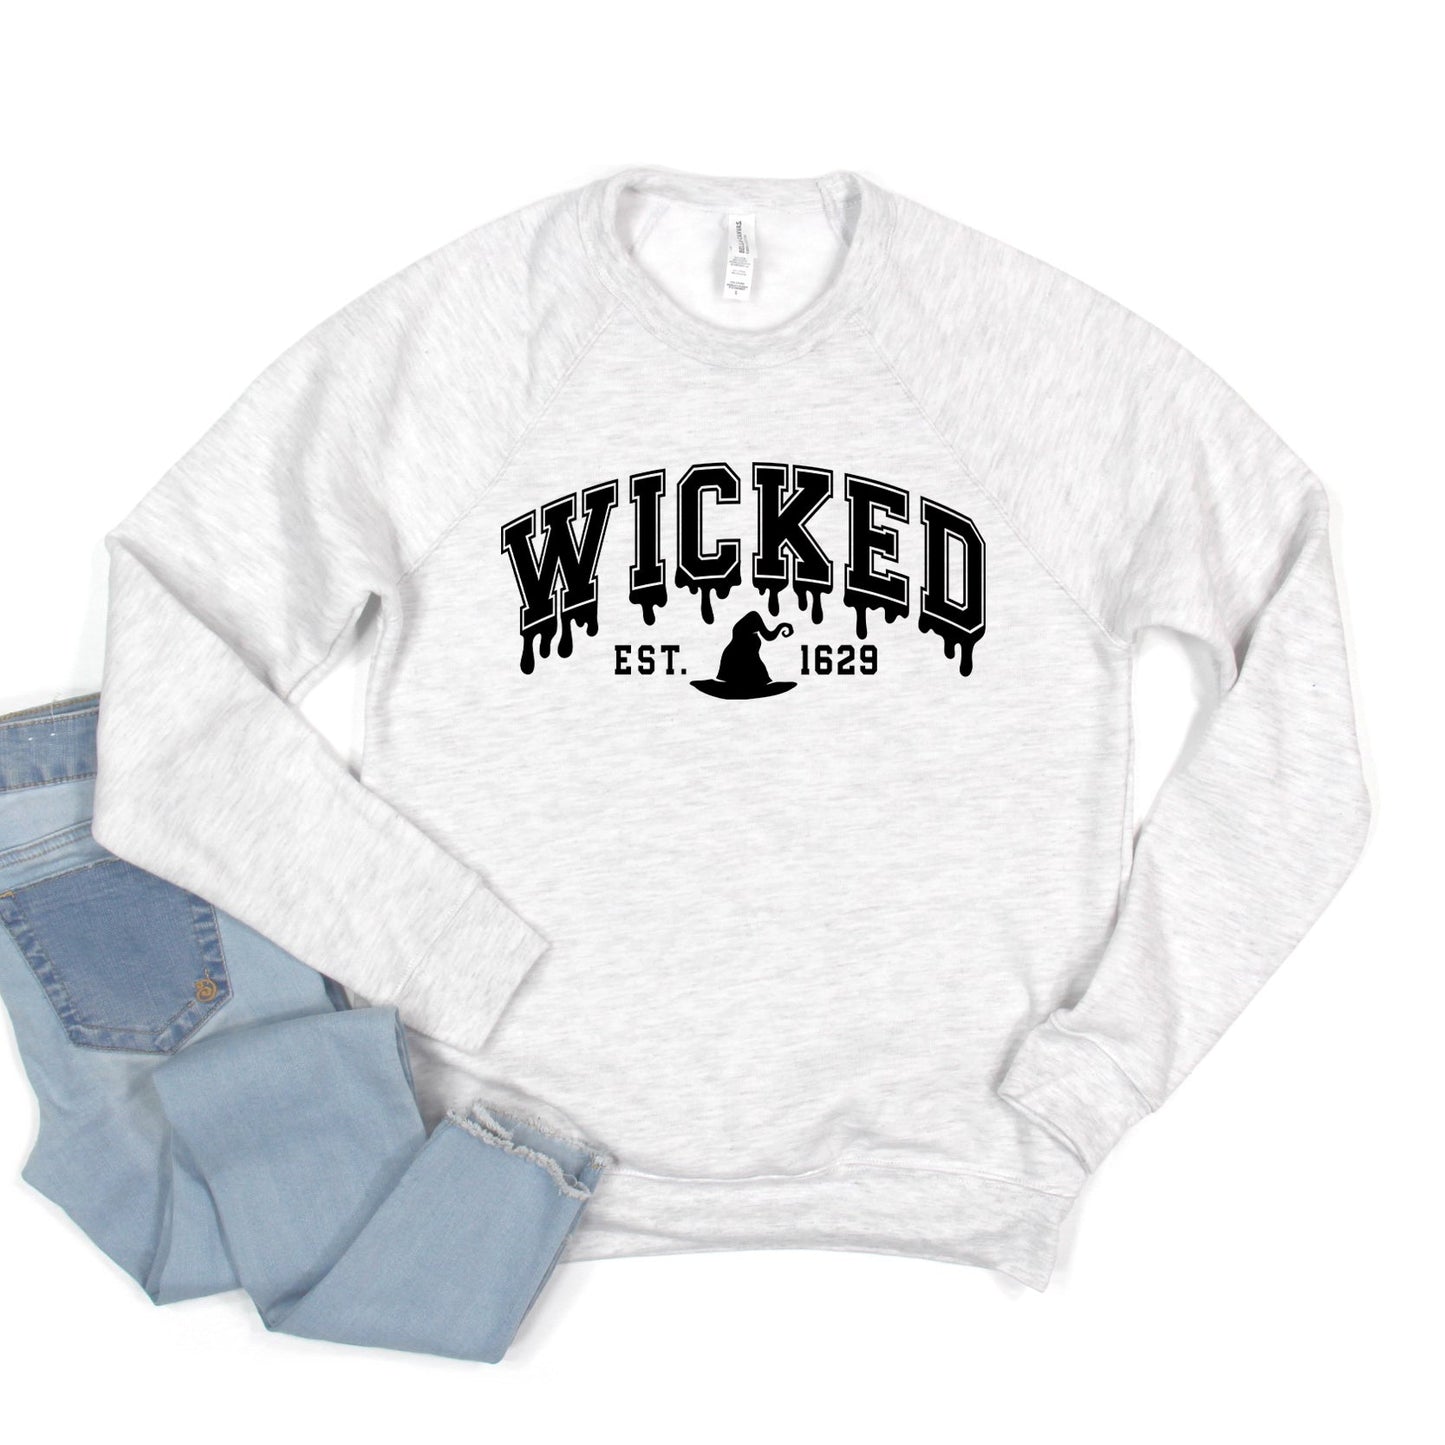 Wicked 1629 | Bella Canvas Sweatshirt